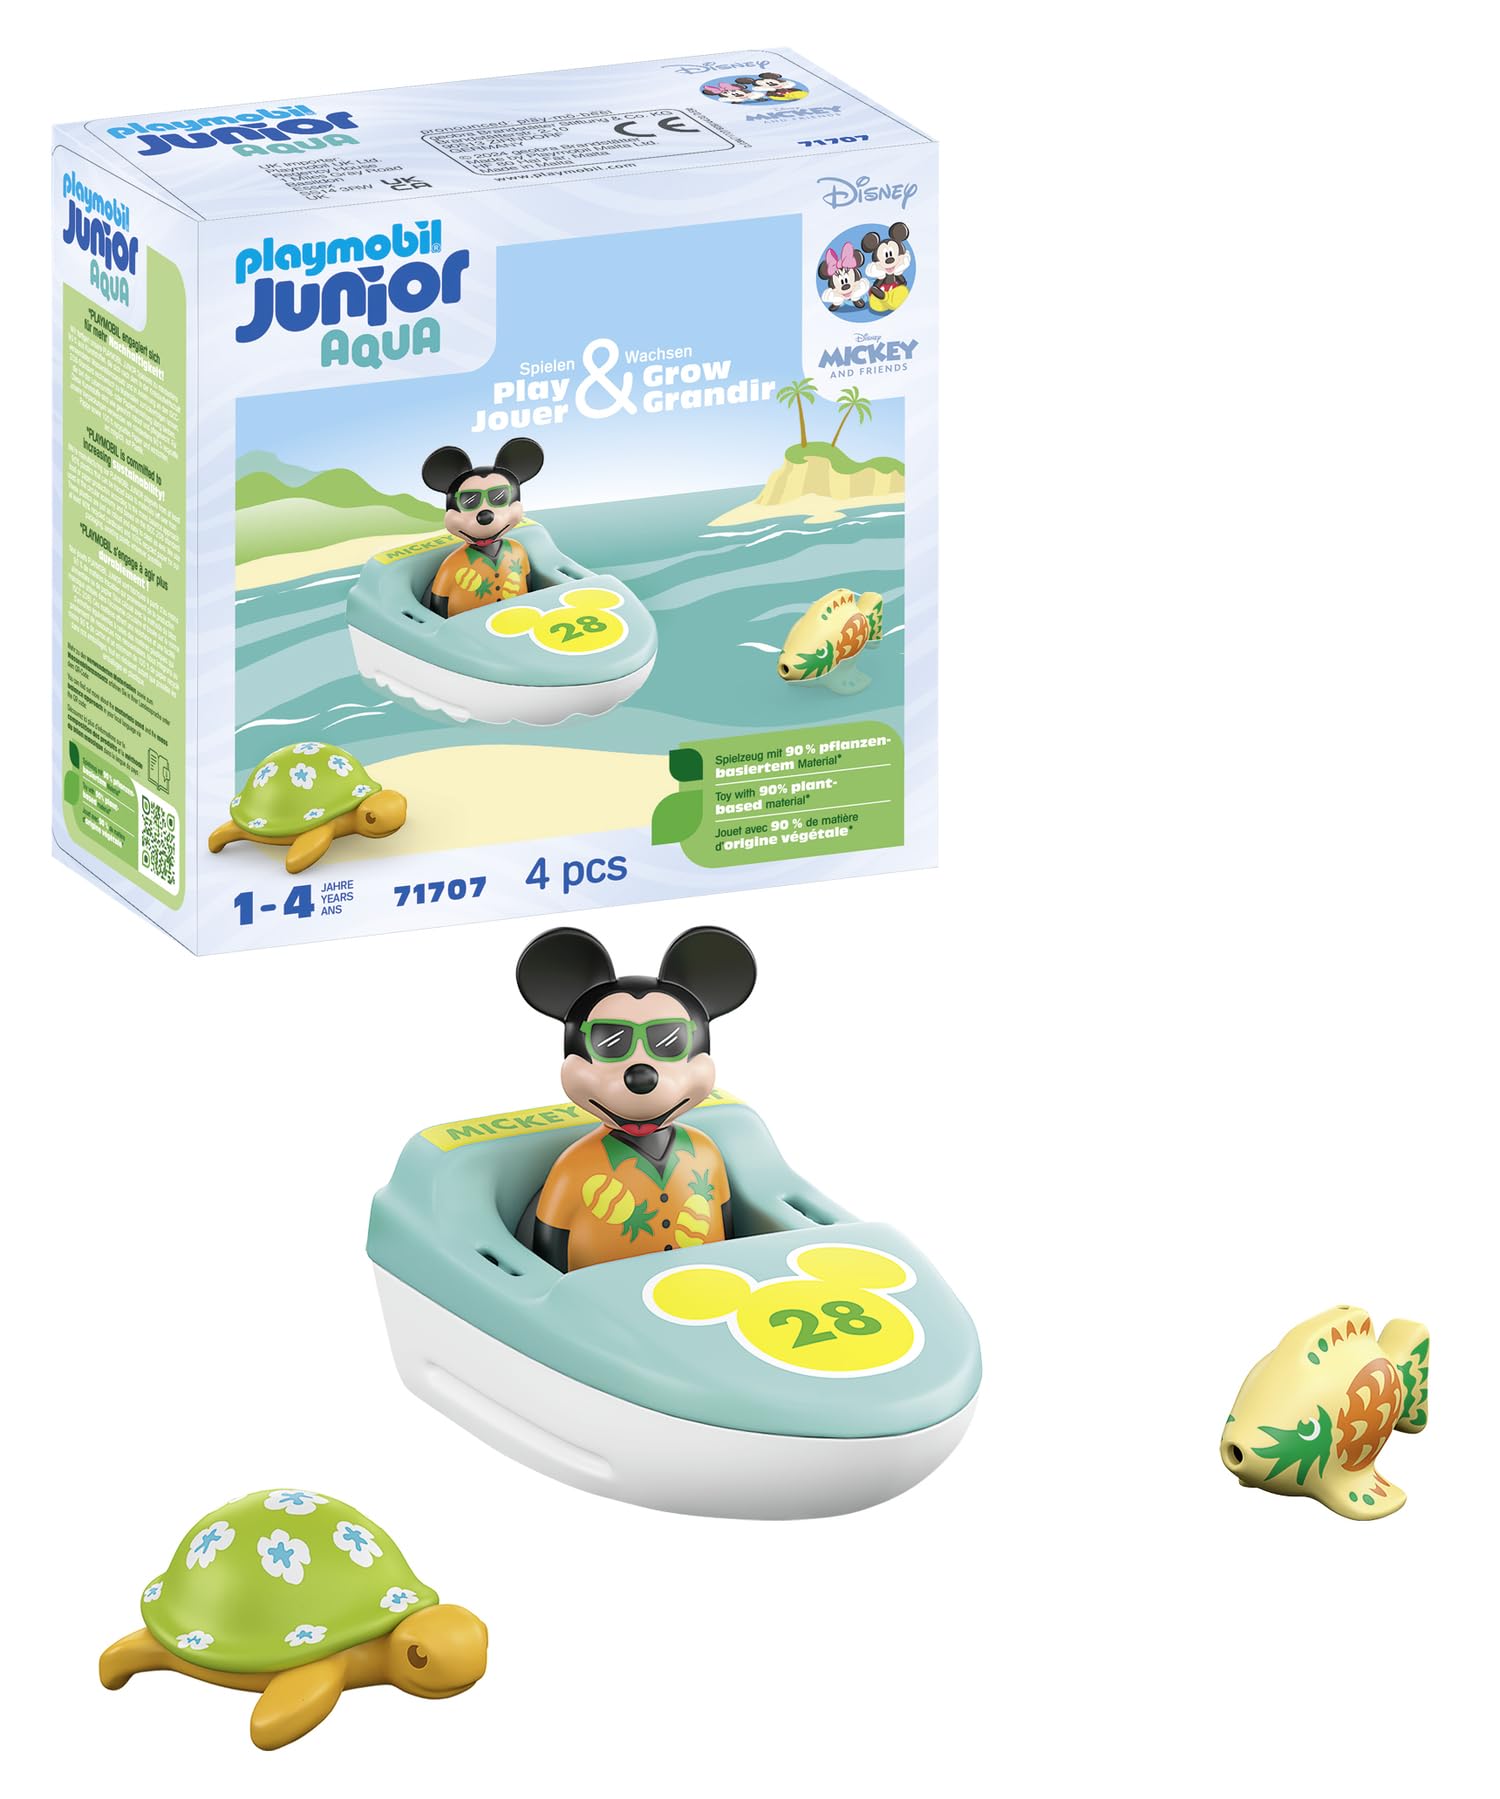 PLAYMOBIL JUNIOR & Disney 71707 Micky Maus' Bootstour, inklusive Schwimmboot und Meerestiere, nachhaltiges Spielzeug aus pflanzenbasierten Kunststoffen, für Kinder ab 1 Jahr